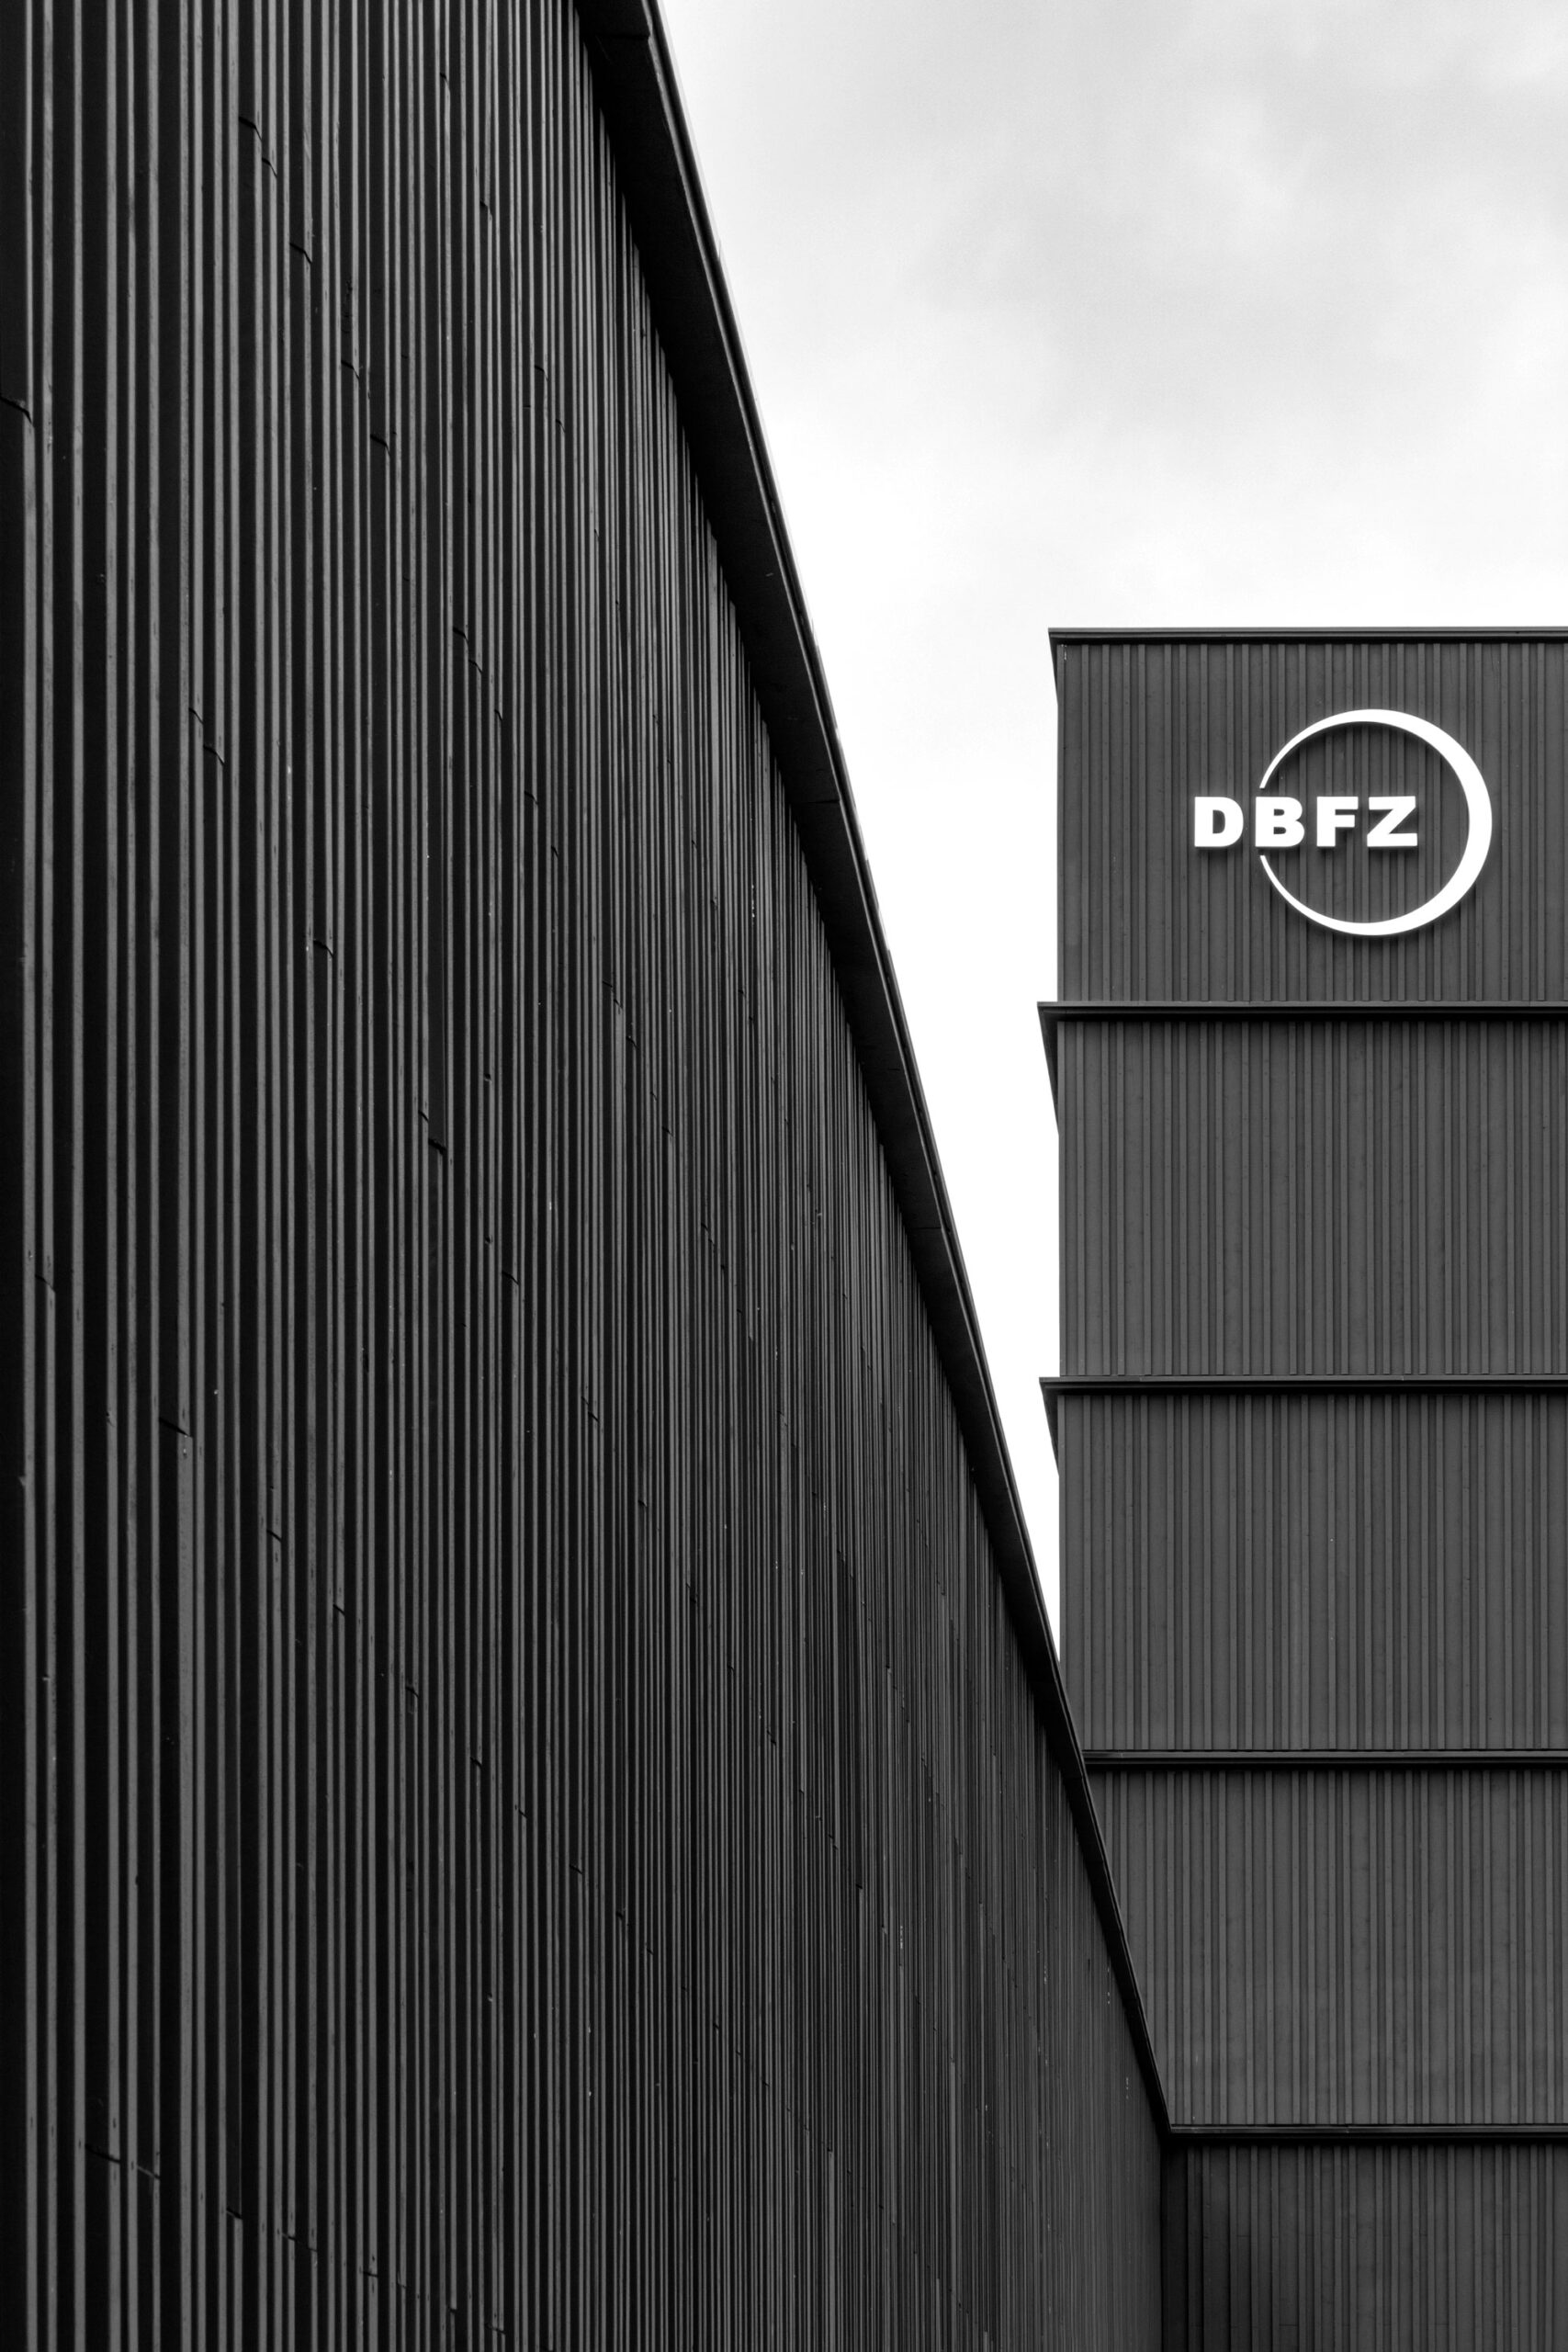 Detailperspektive der schwarzen Fassade des DBFZ Technikum Deutsches Biomasseforschungszentrum